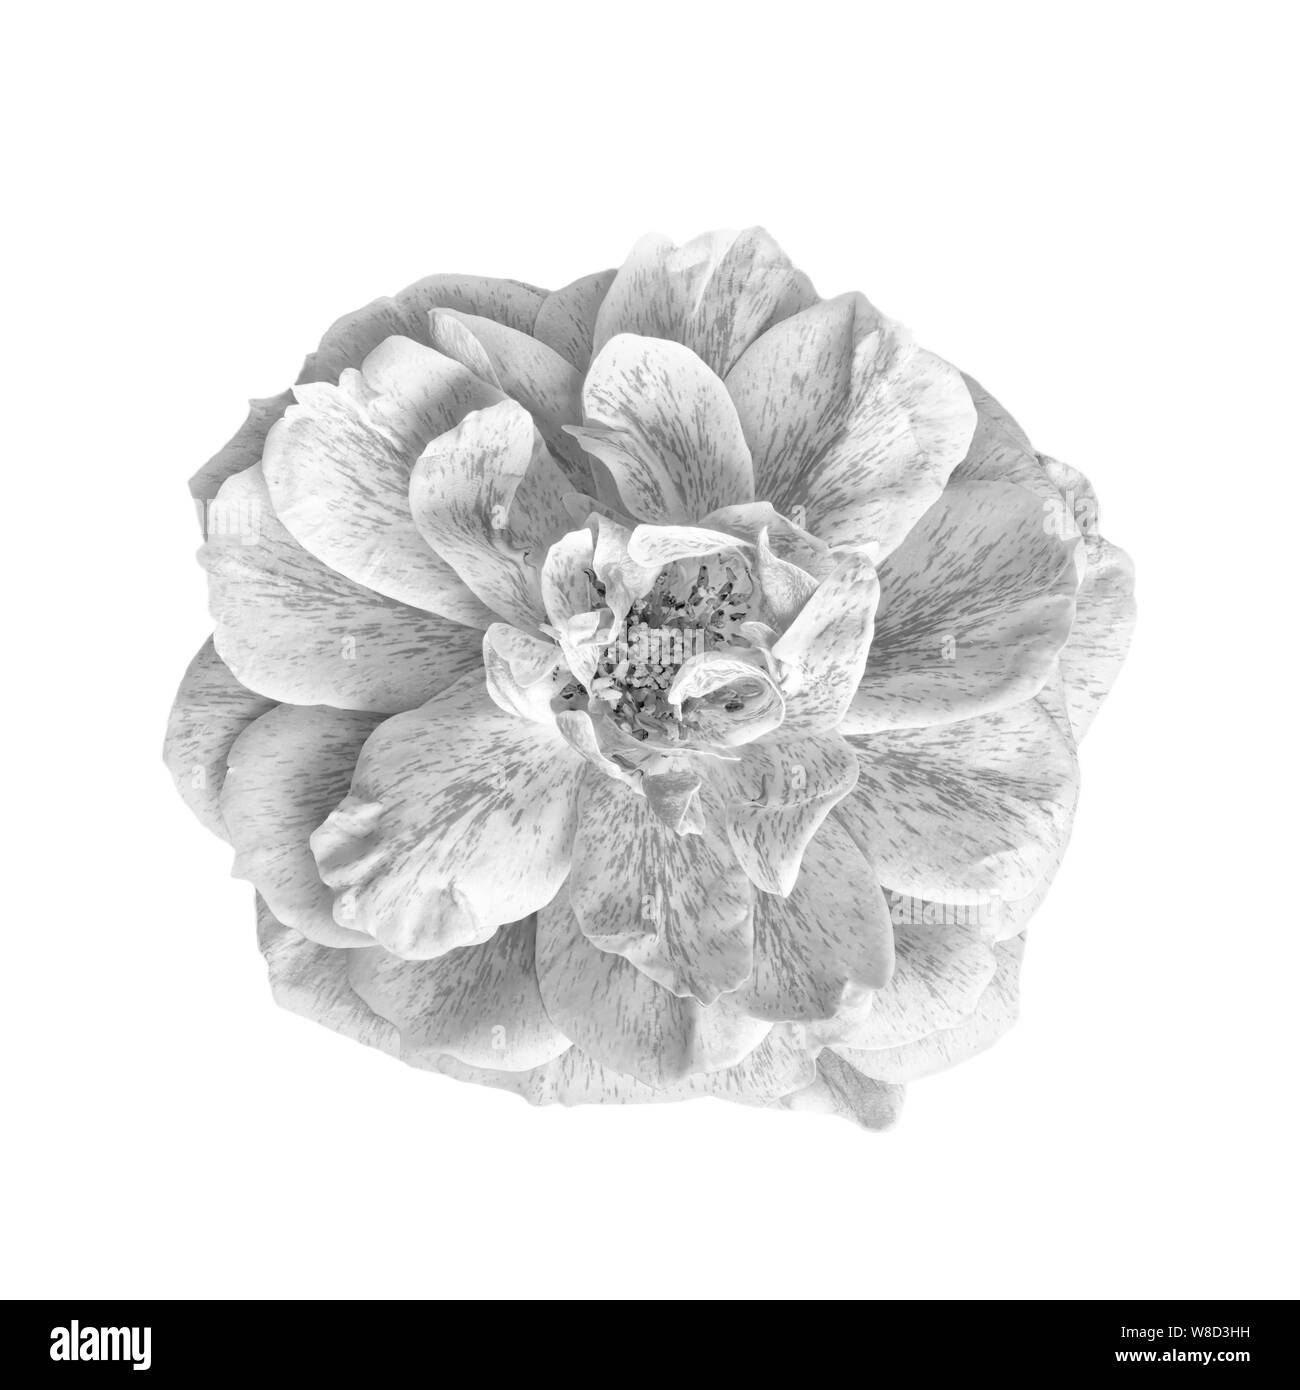 Macro monochrome d'un grand ouvert fleur rose blanche sur fond noir, isolé unique fleurissent en vintage style de peinture avec texture détaillée Banque D'Images